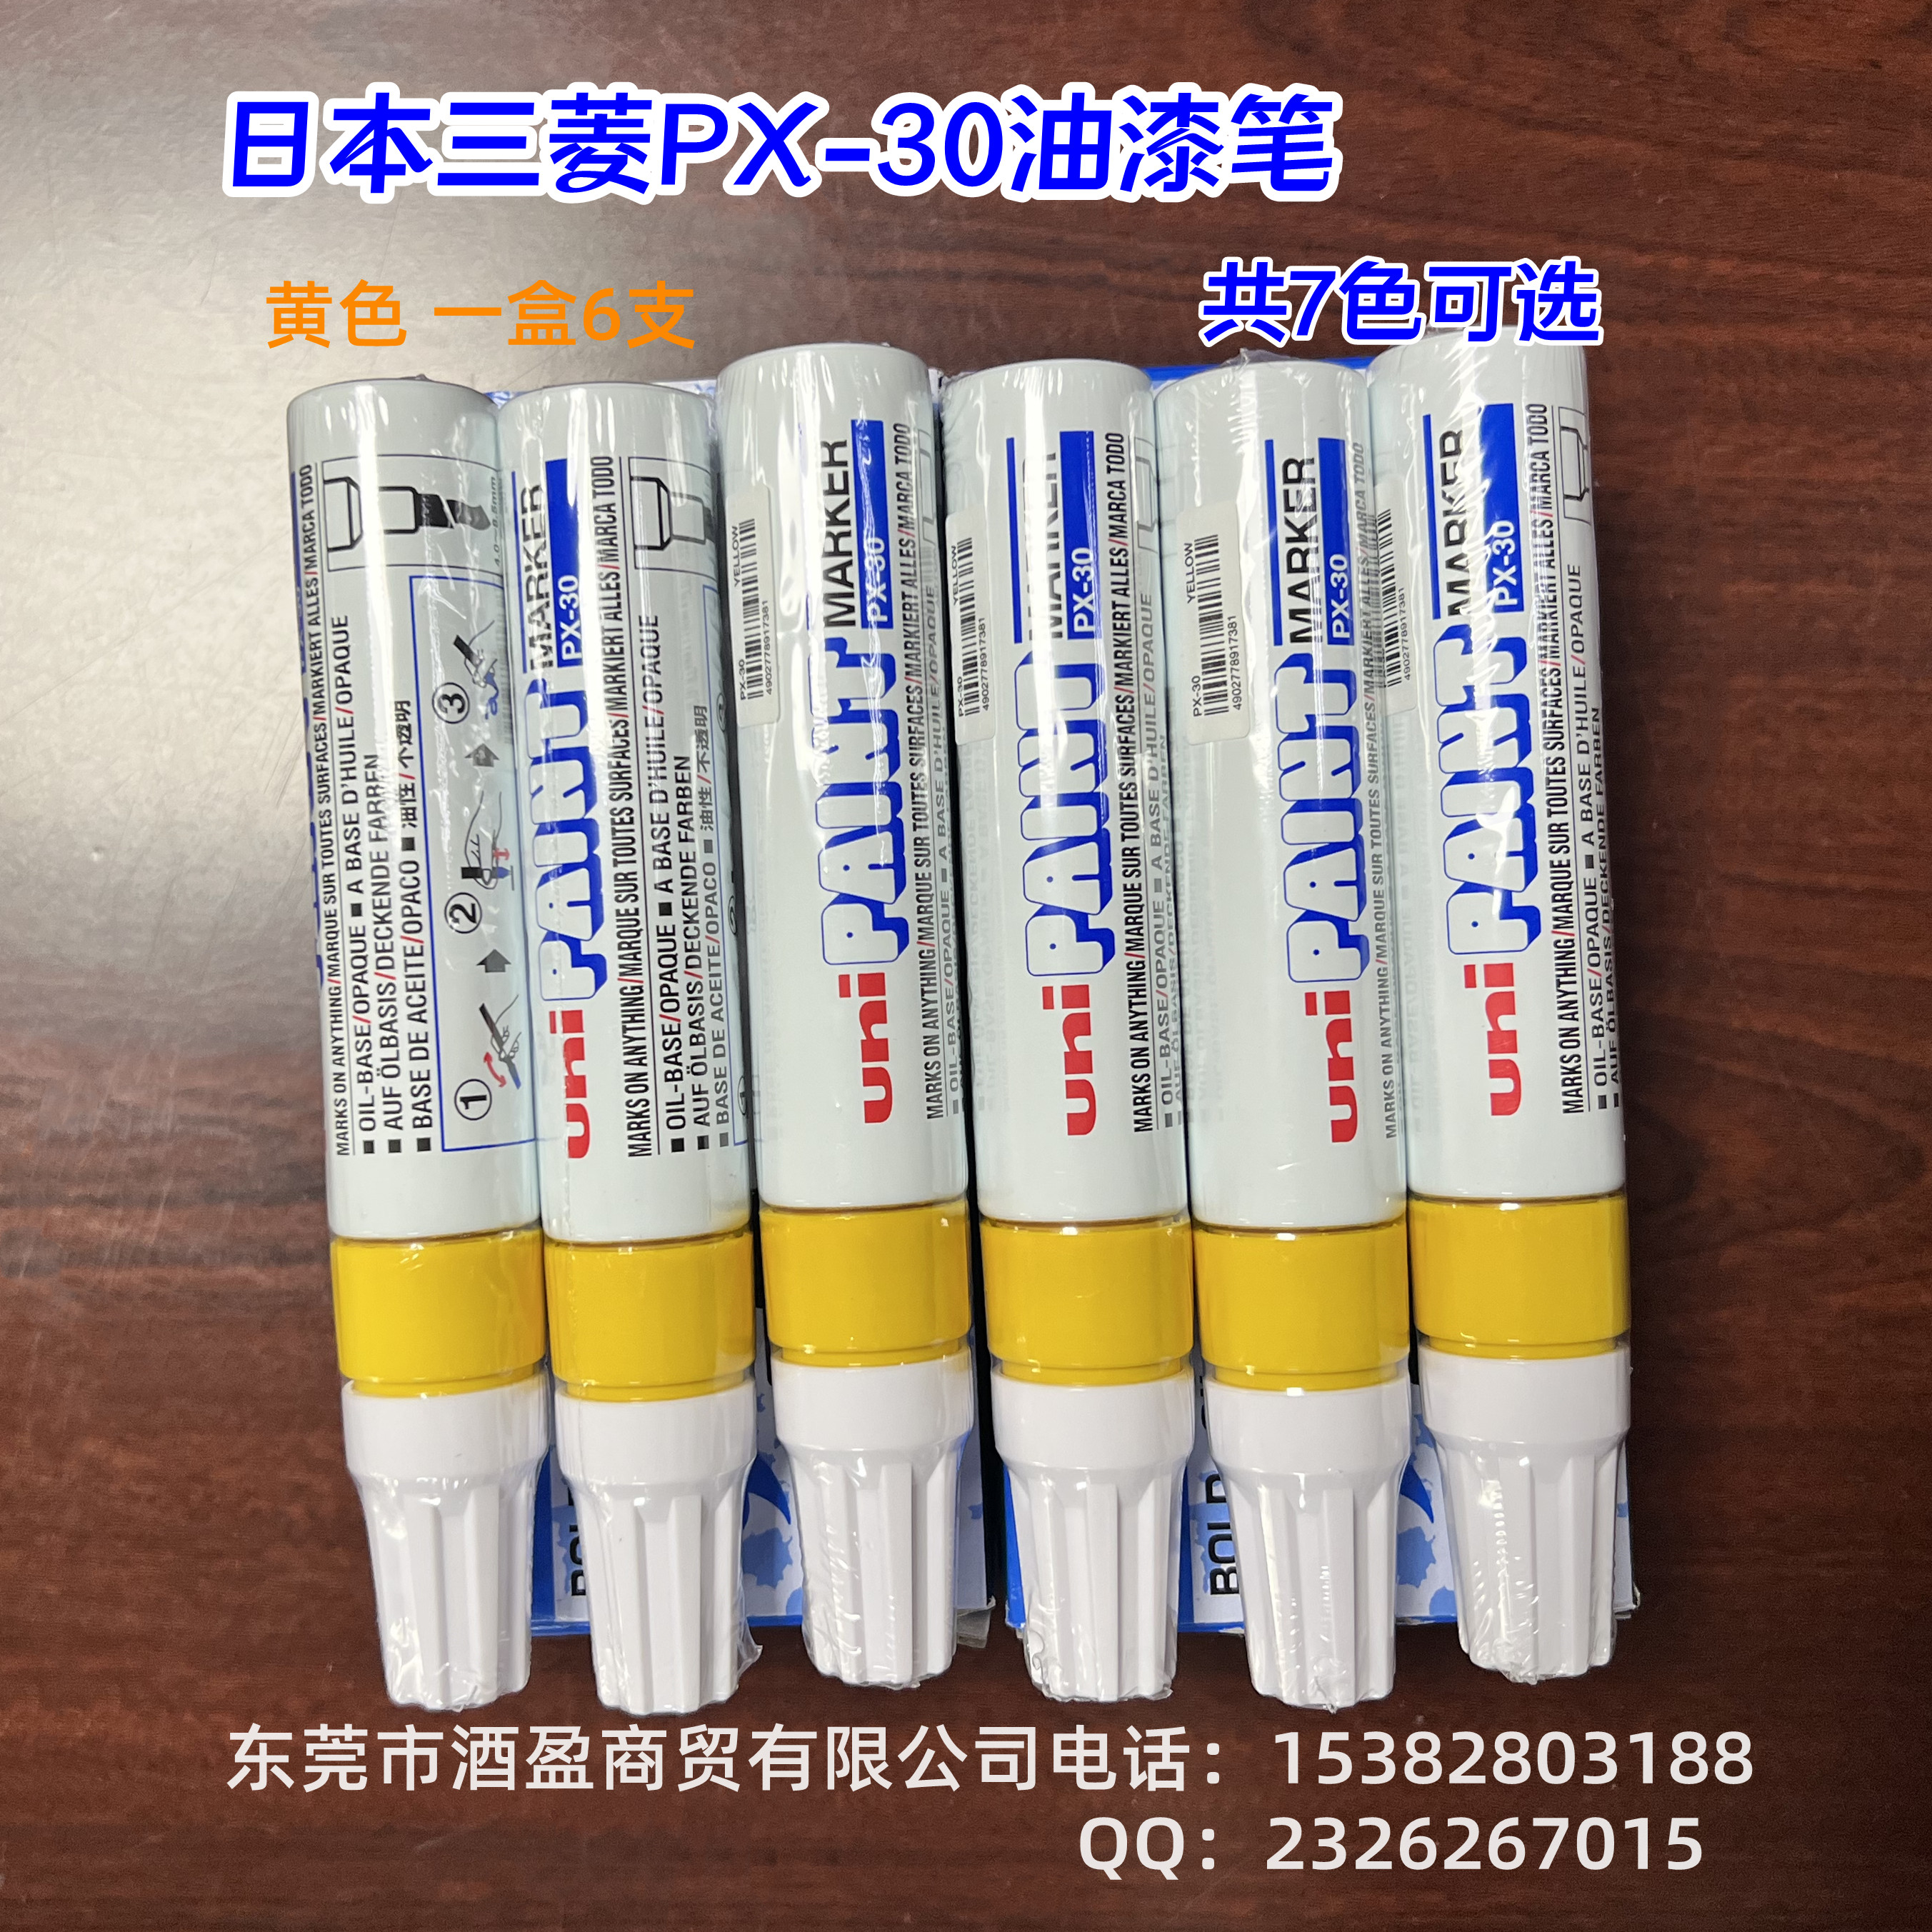 日本三菱PX-30油漆笔 环保记号笔 PX-30补色笔三菱广告笔7色可选